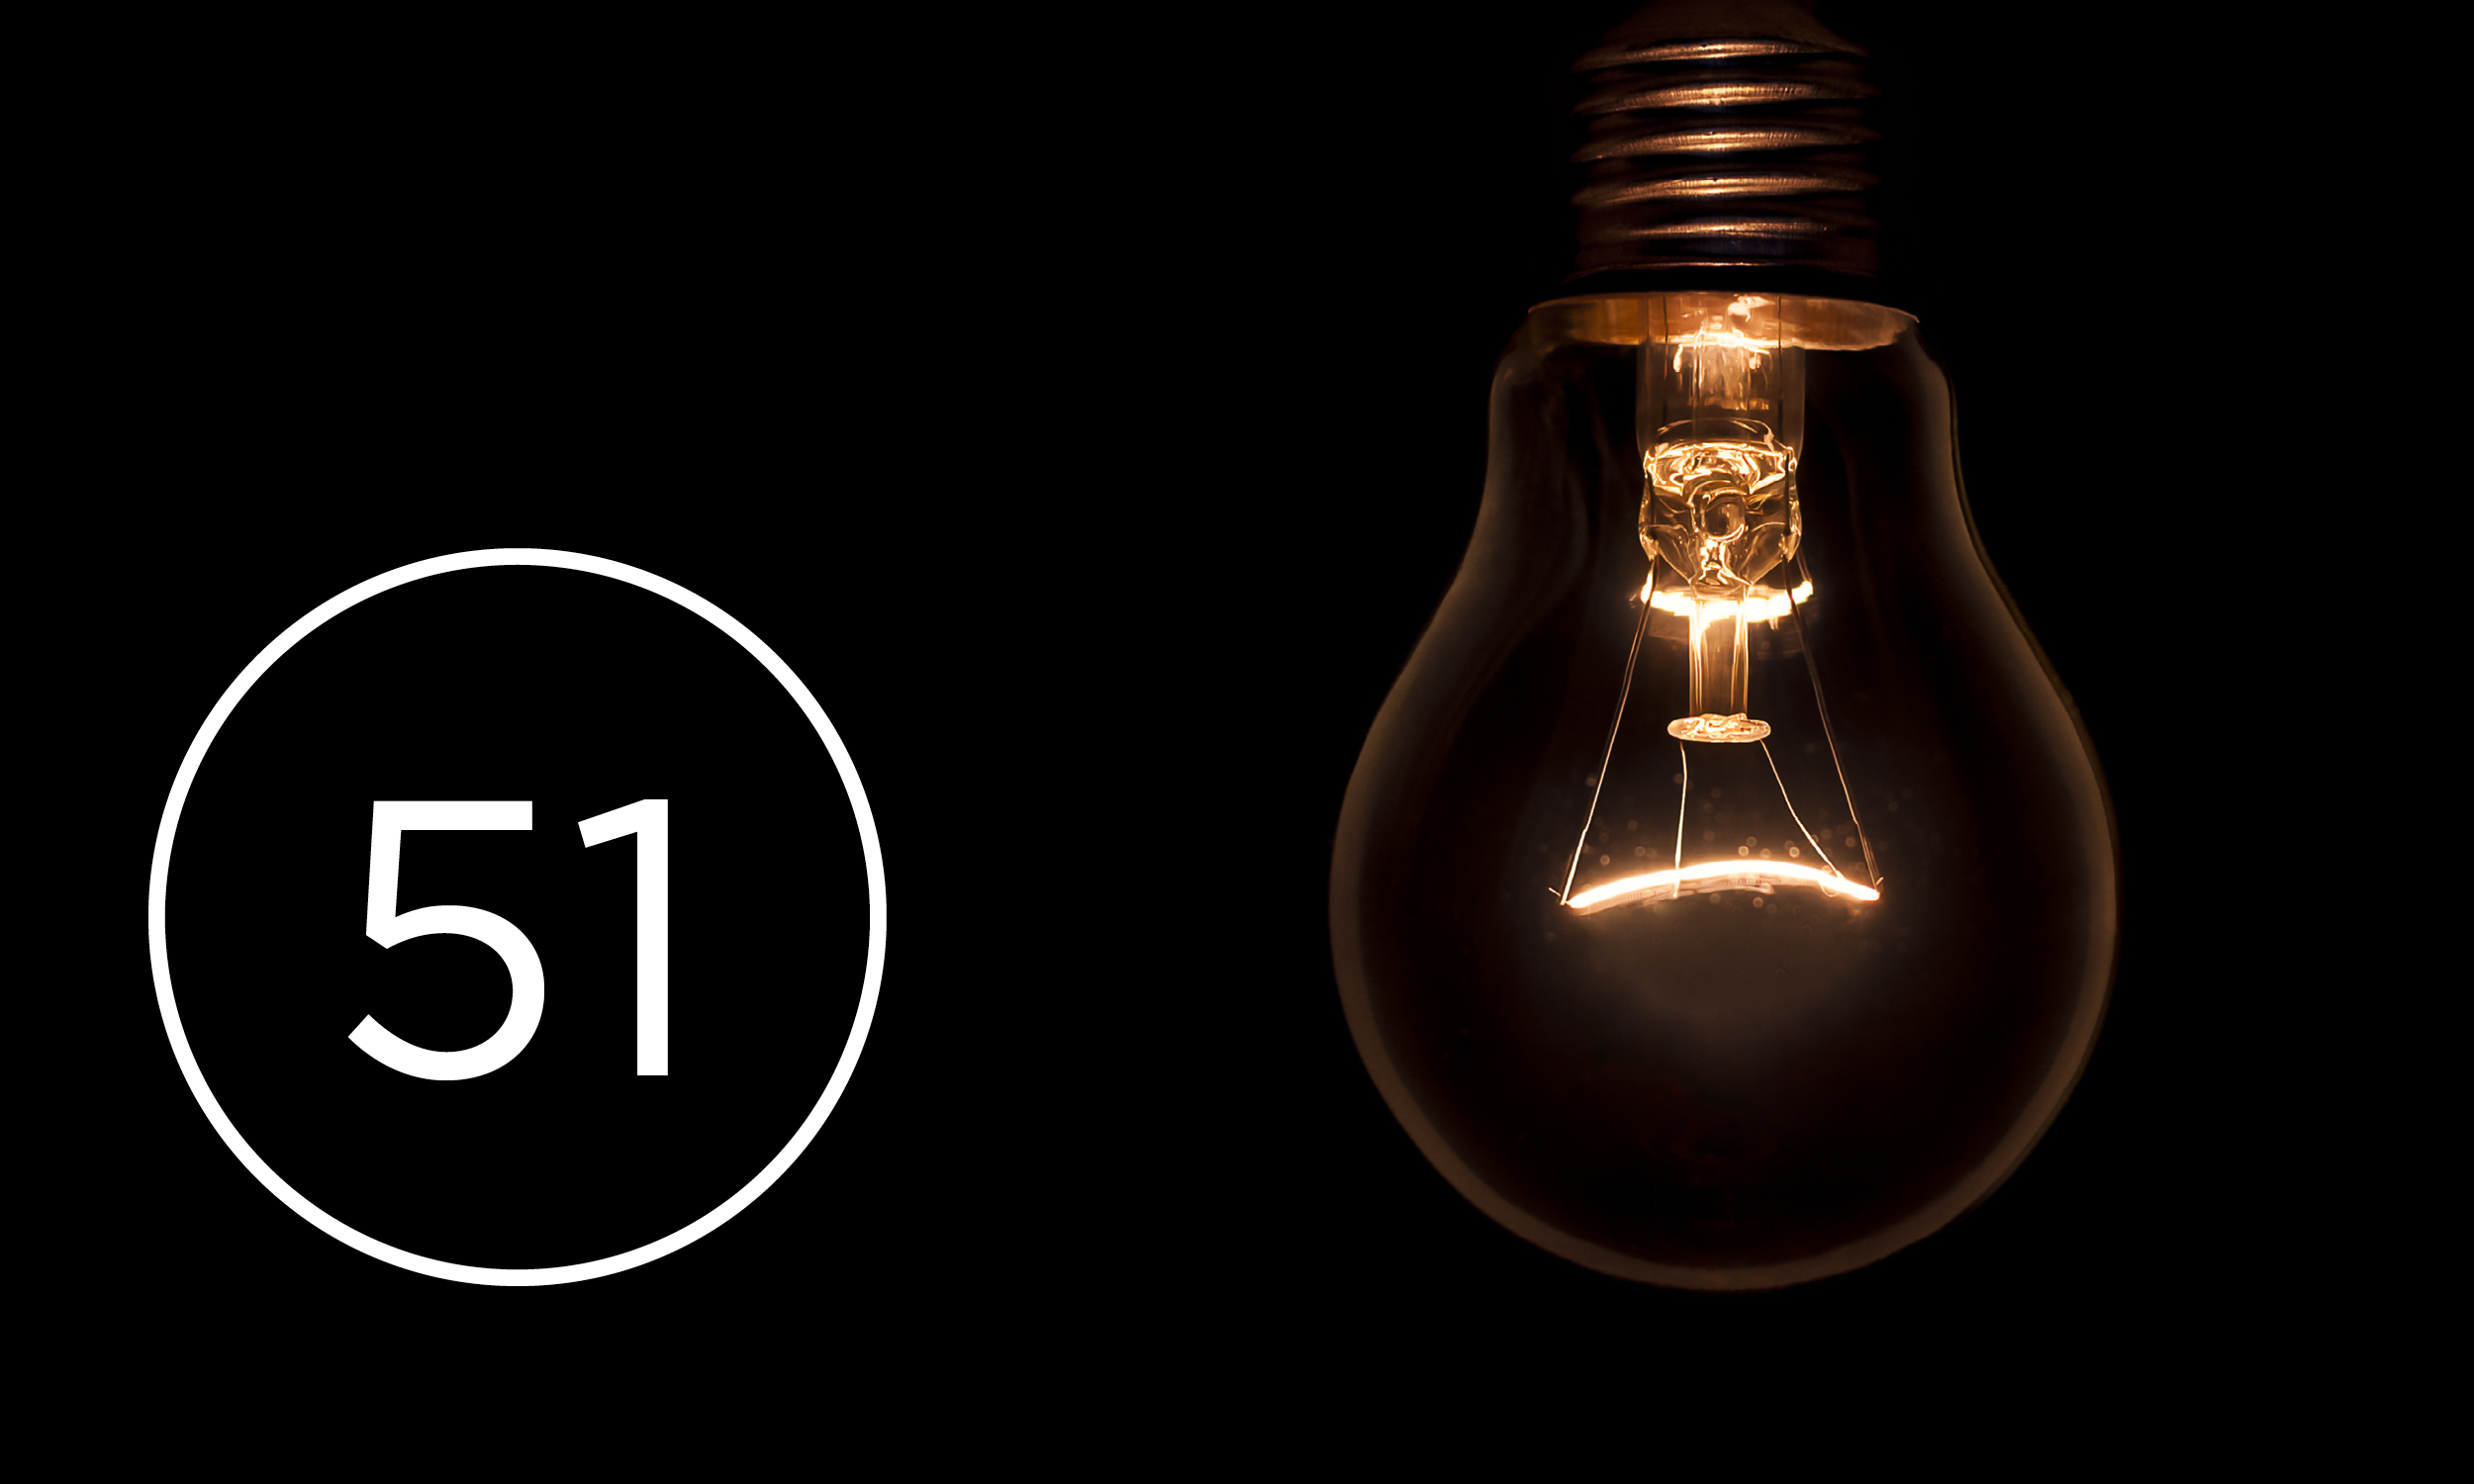 Lightbulb on black background, numbers '51'